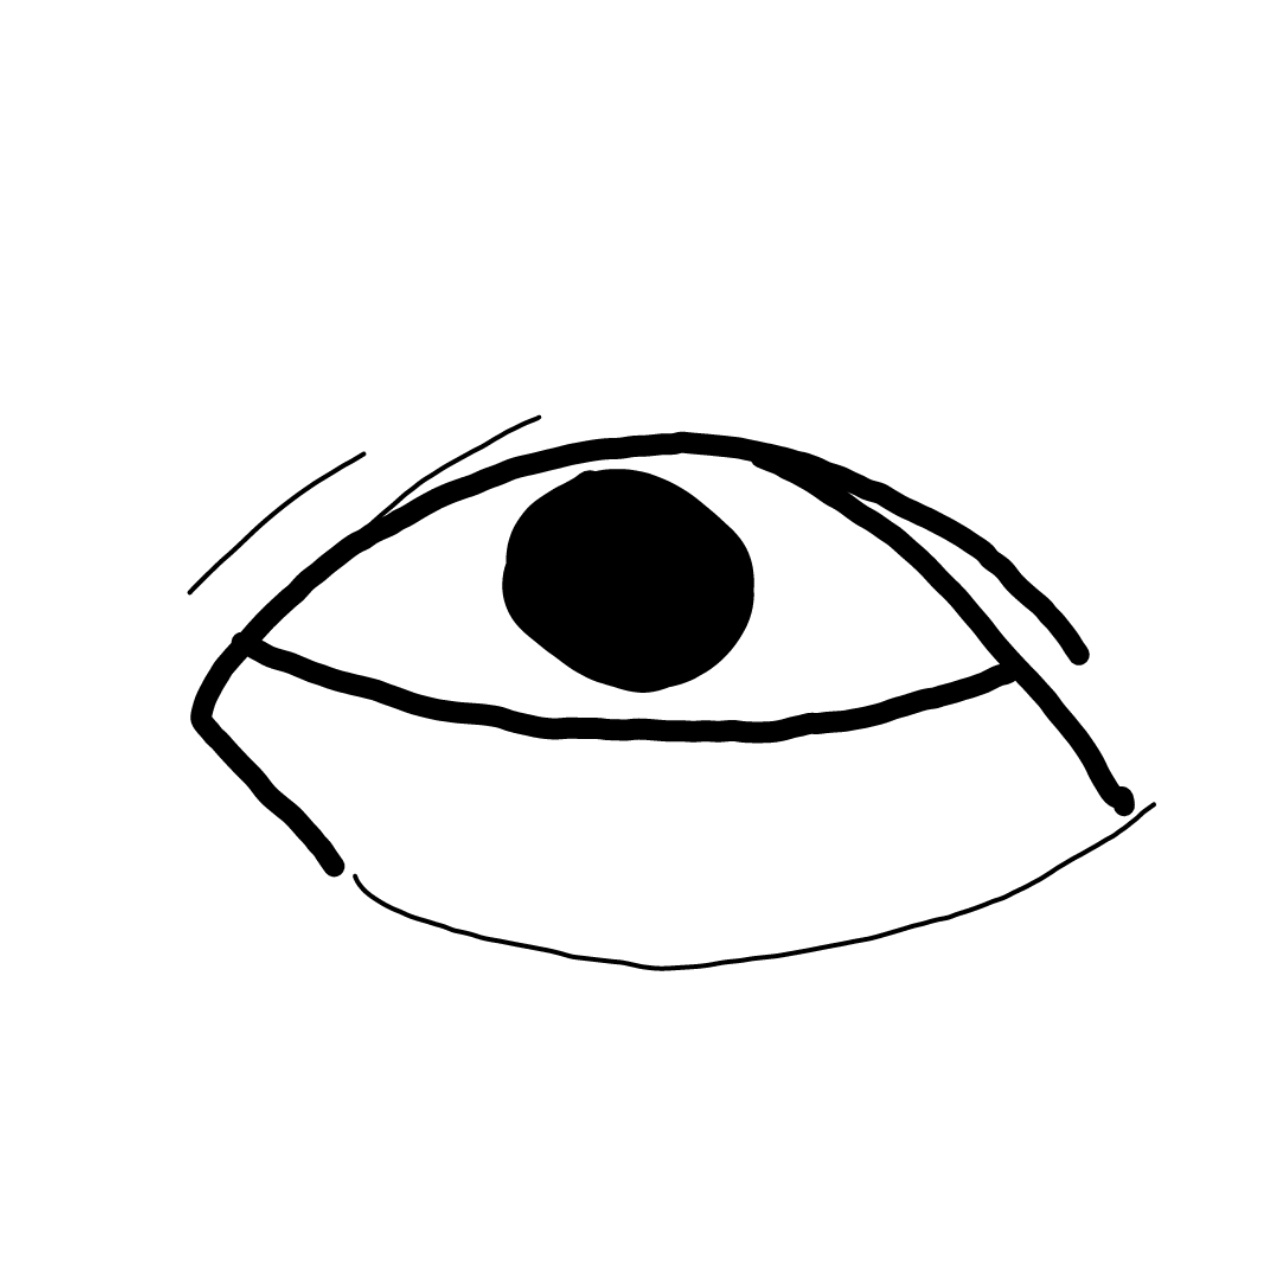 目の形が悪い by 匿名さん の画像